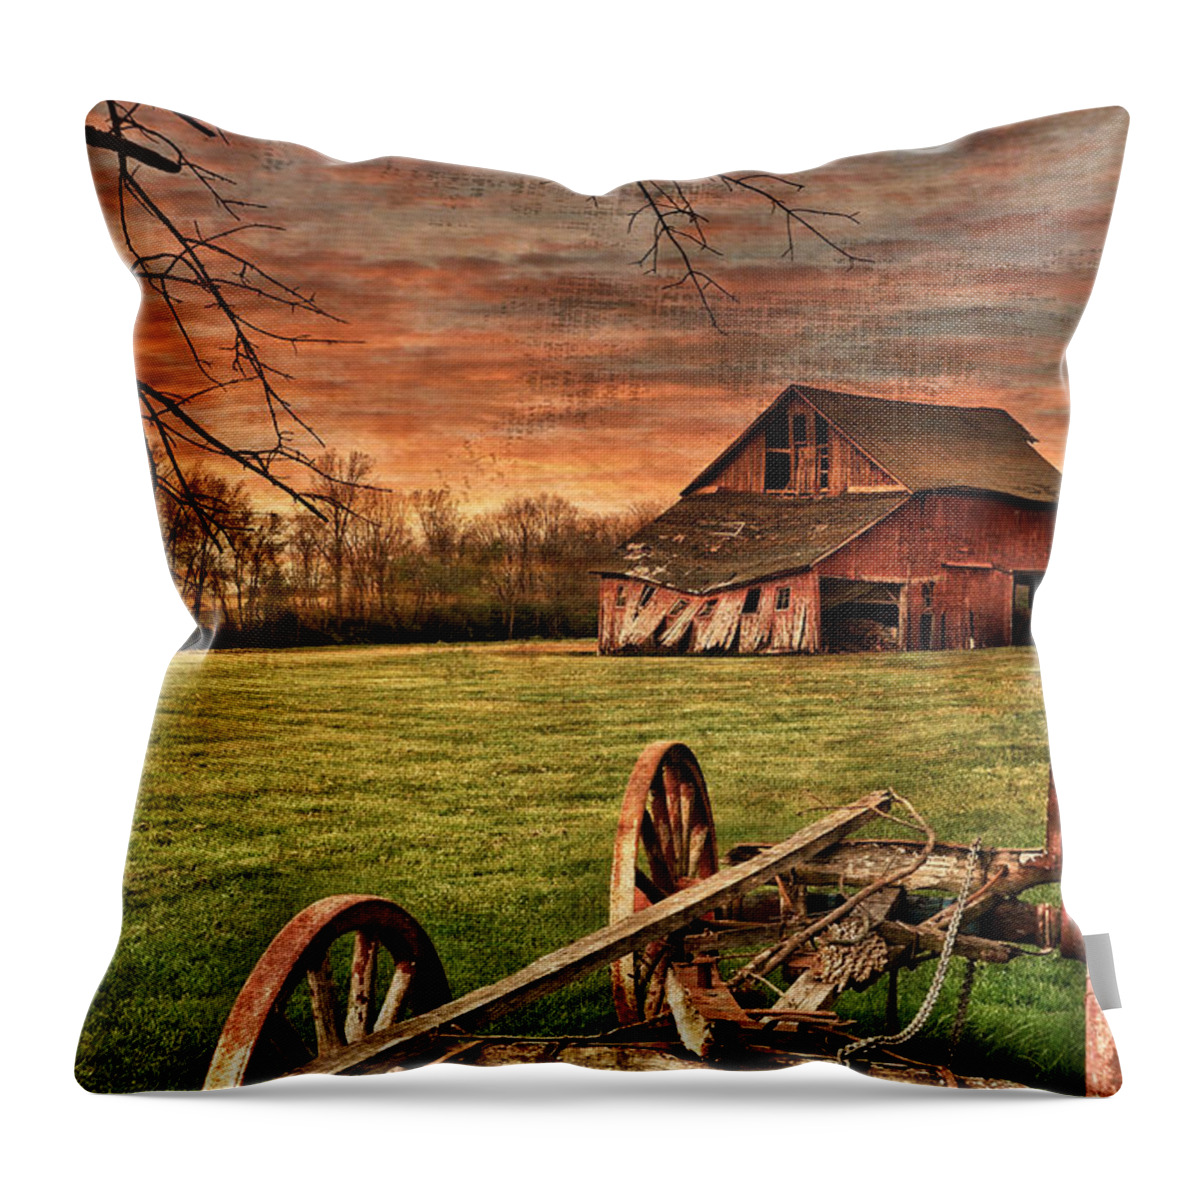 Barn Throw Pillow featuring the photograph Still Standing by Andrea Platt